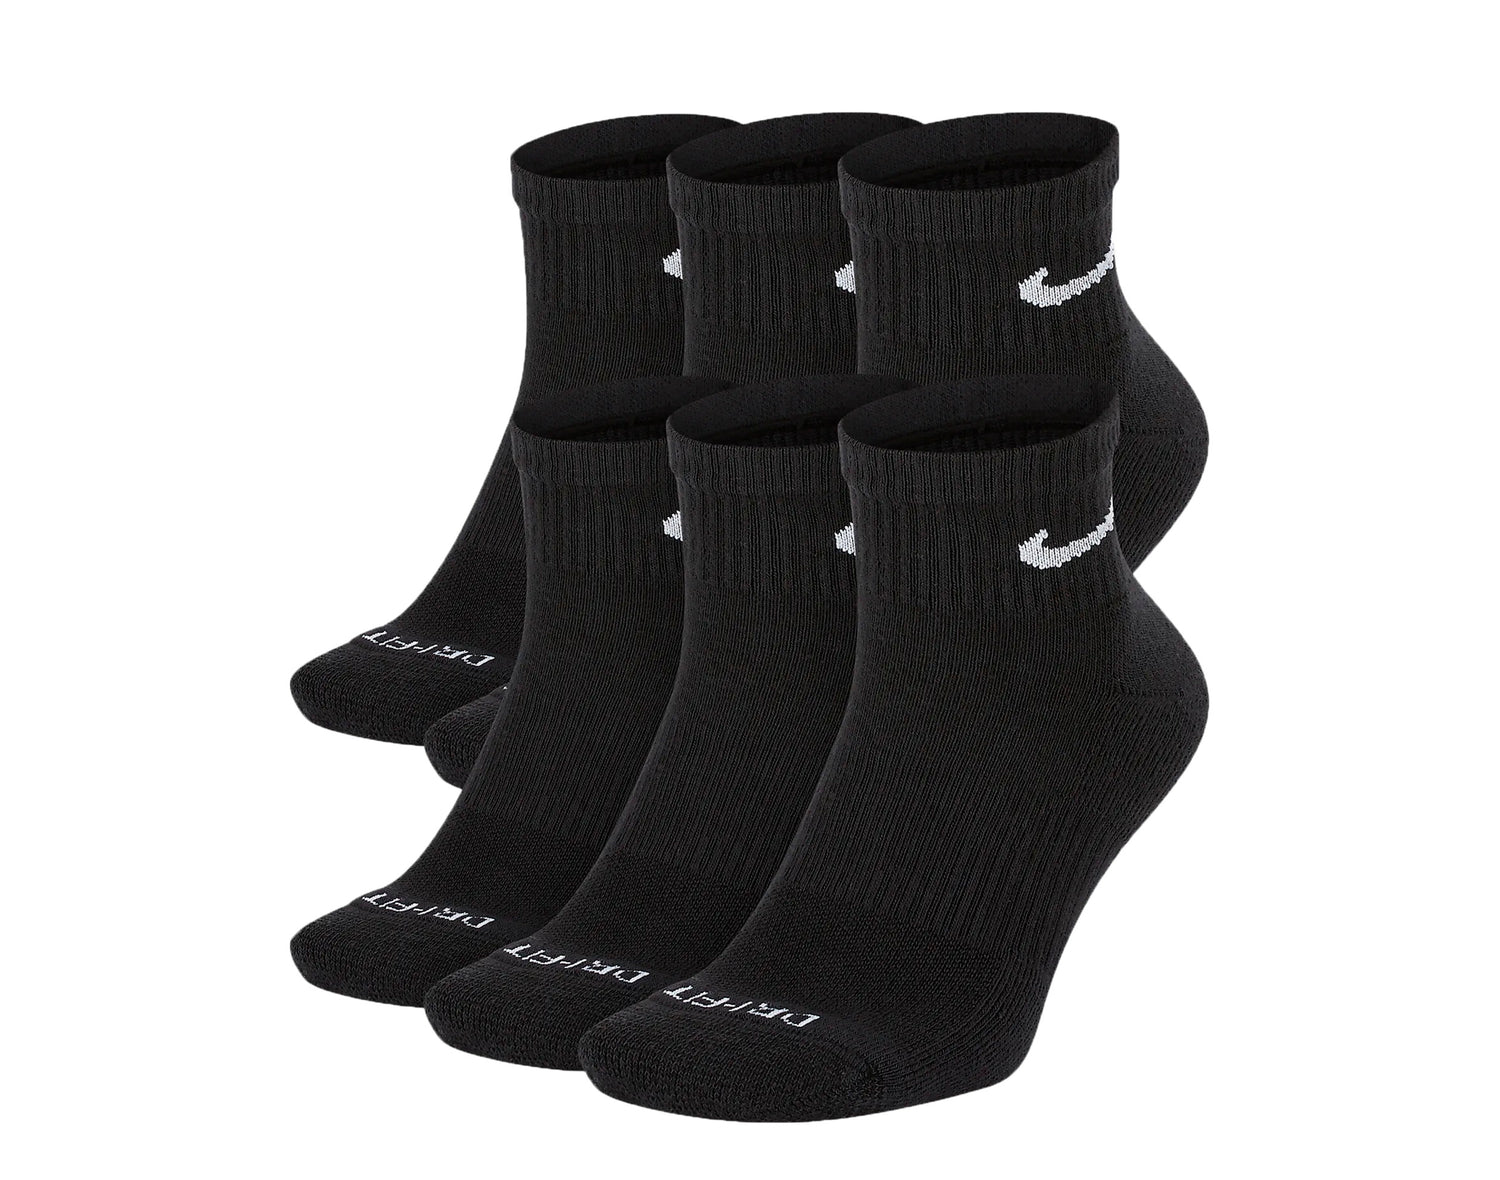 Nike - Men - Socks